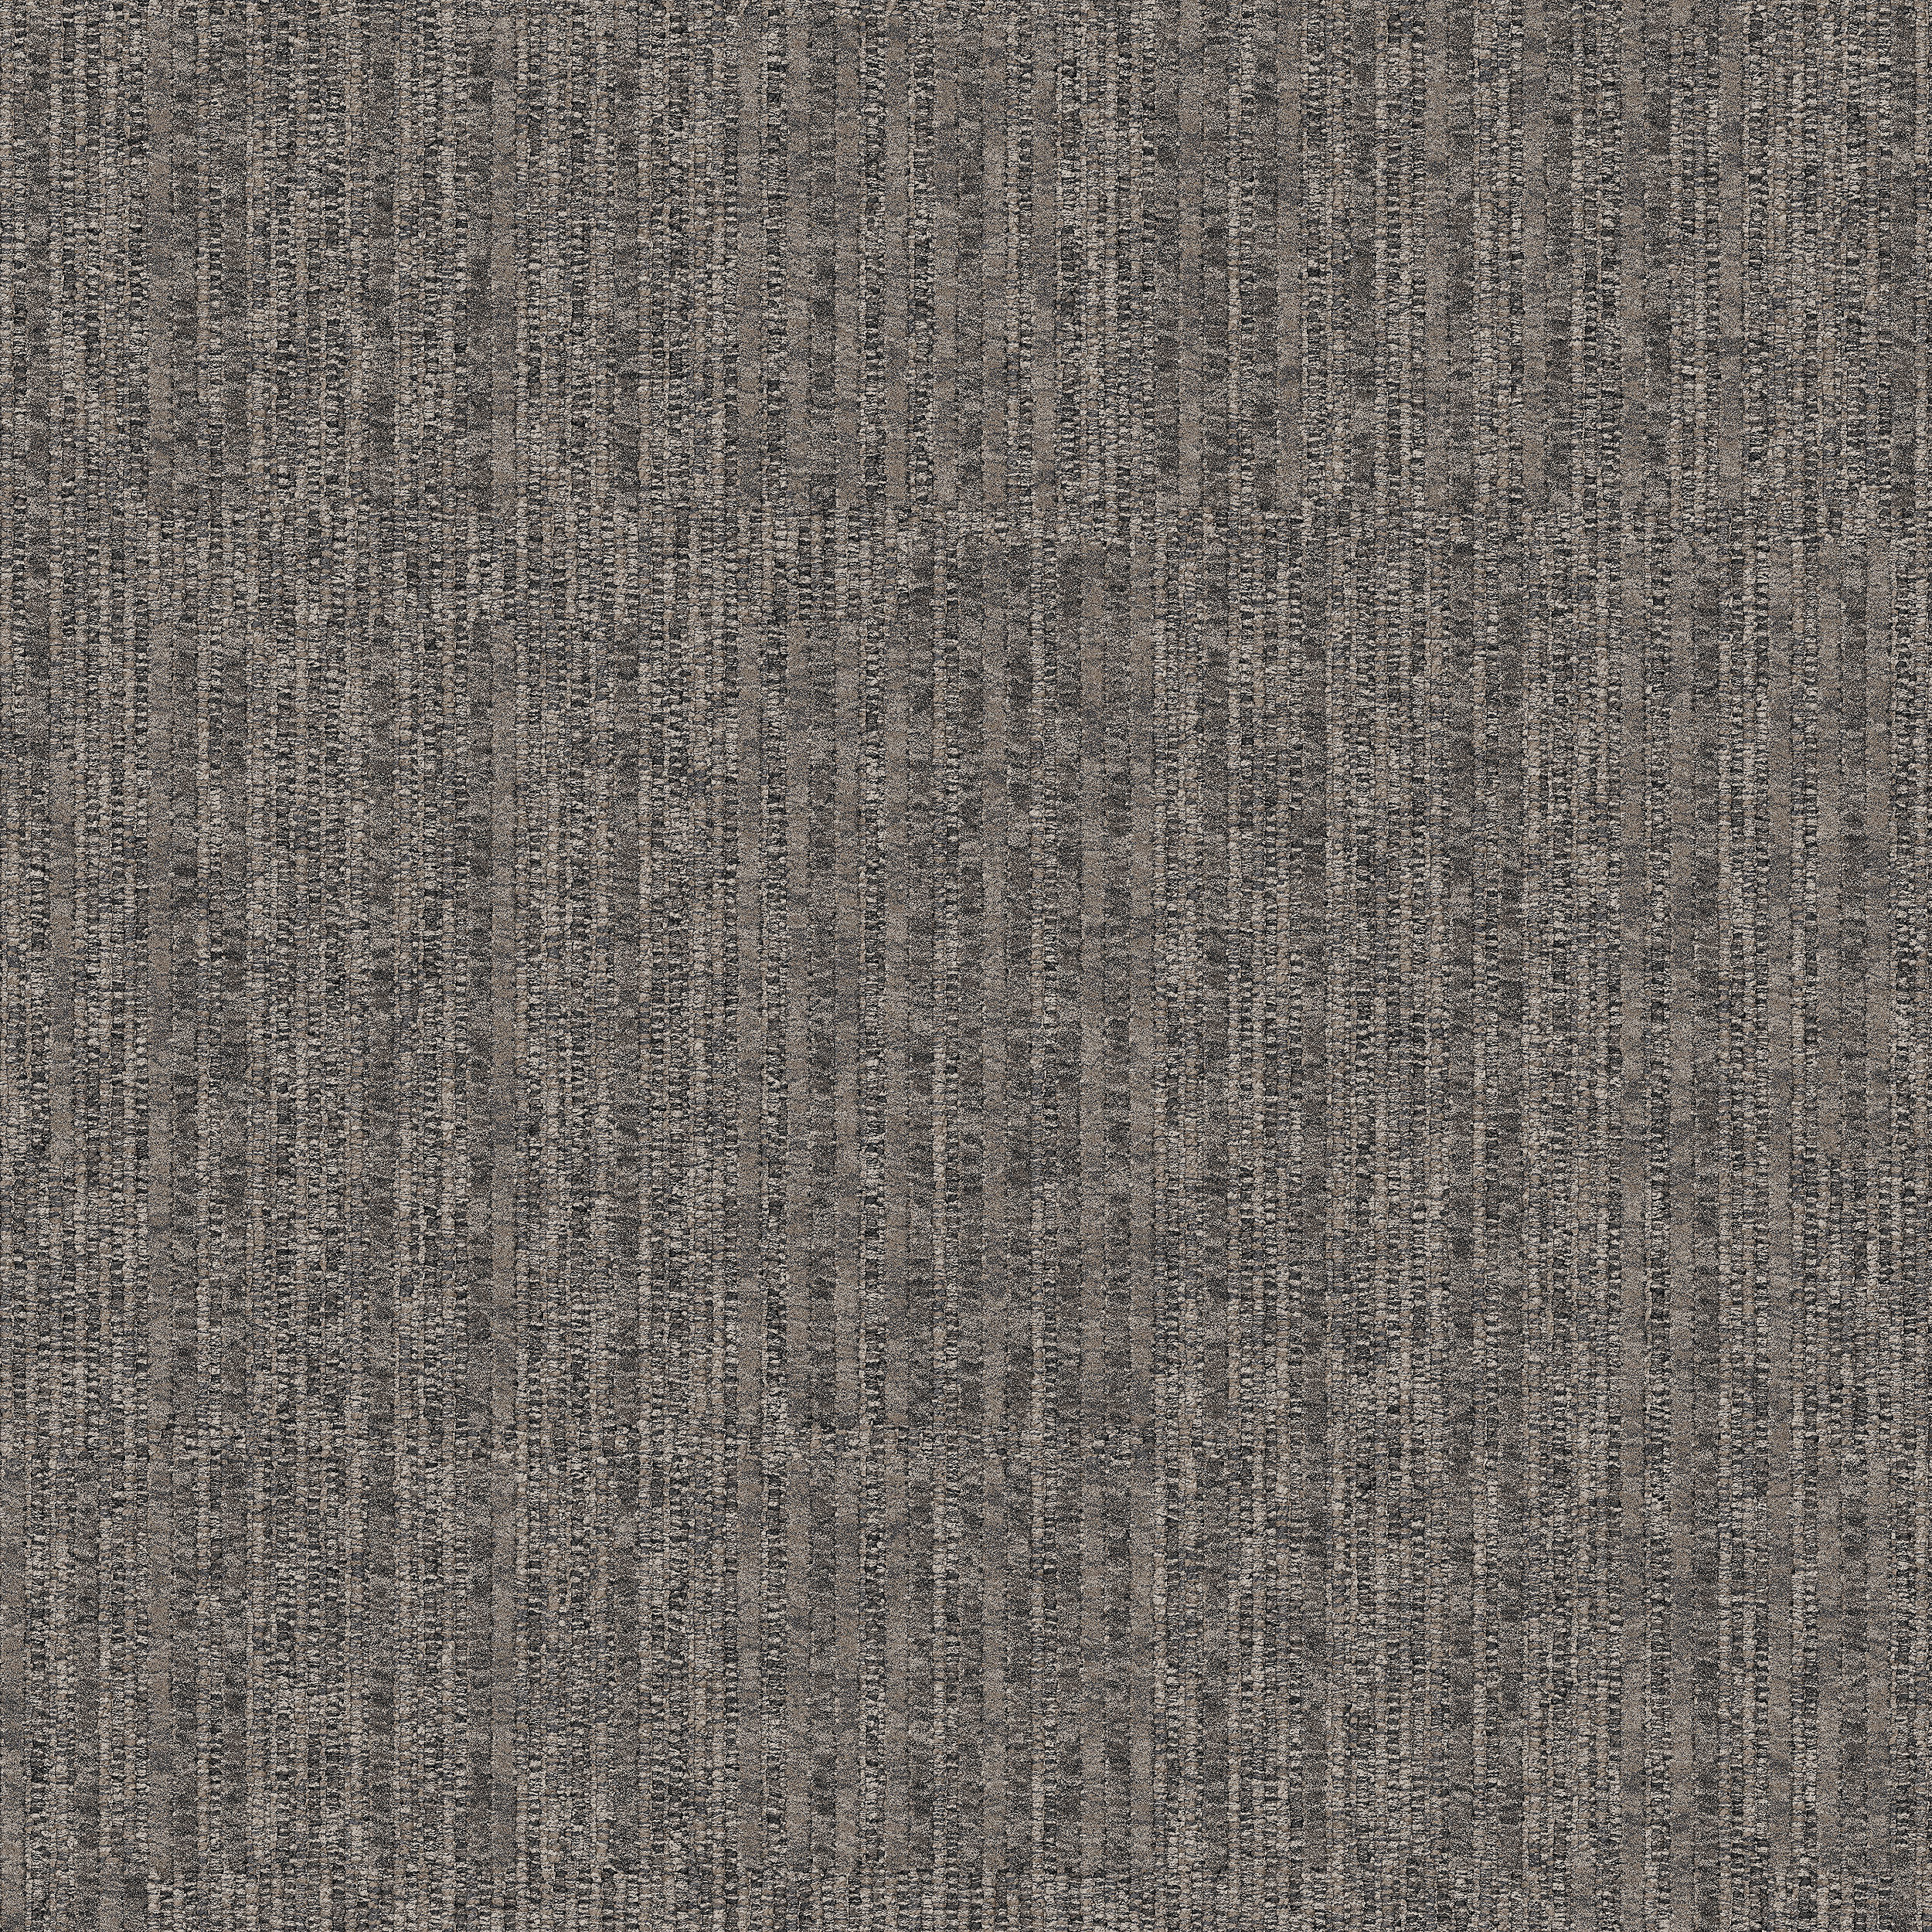 Equilibrium Carpet Tile In Persistence número de imagen 10